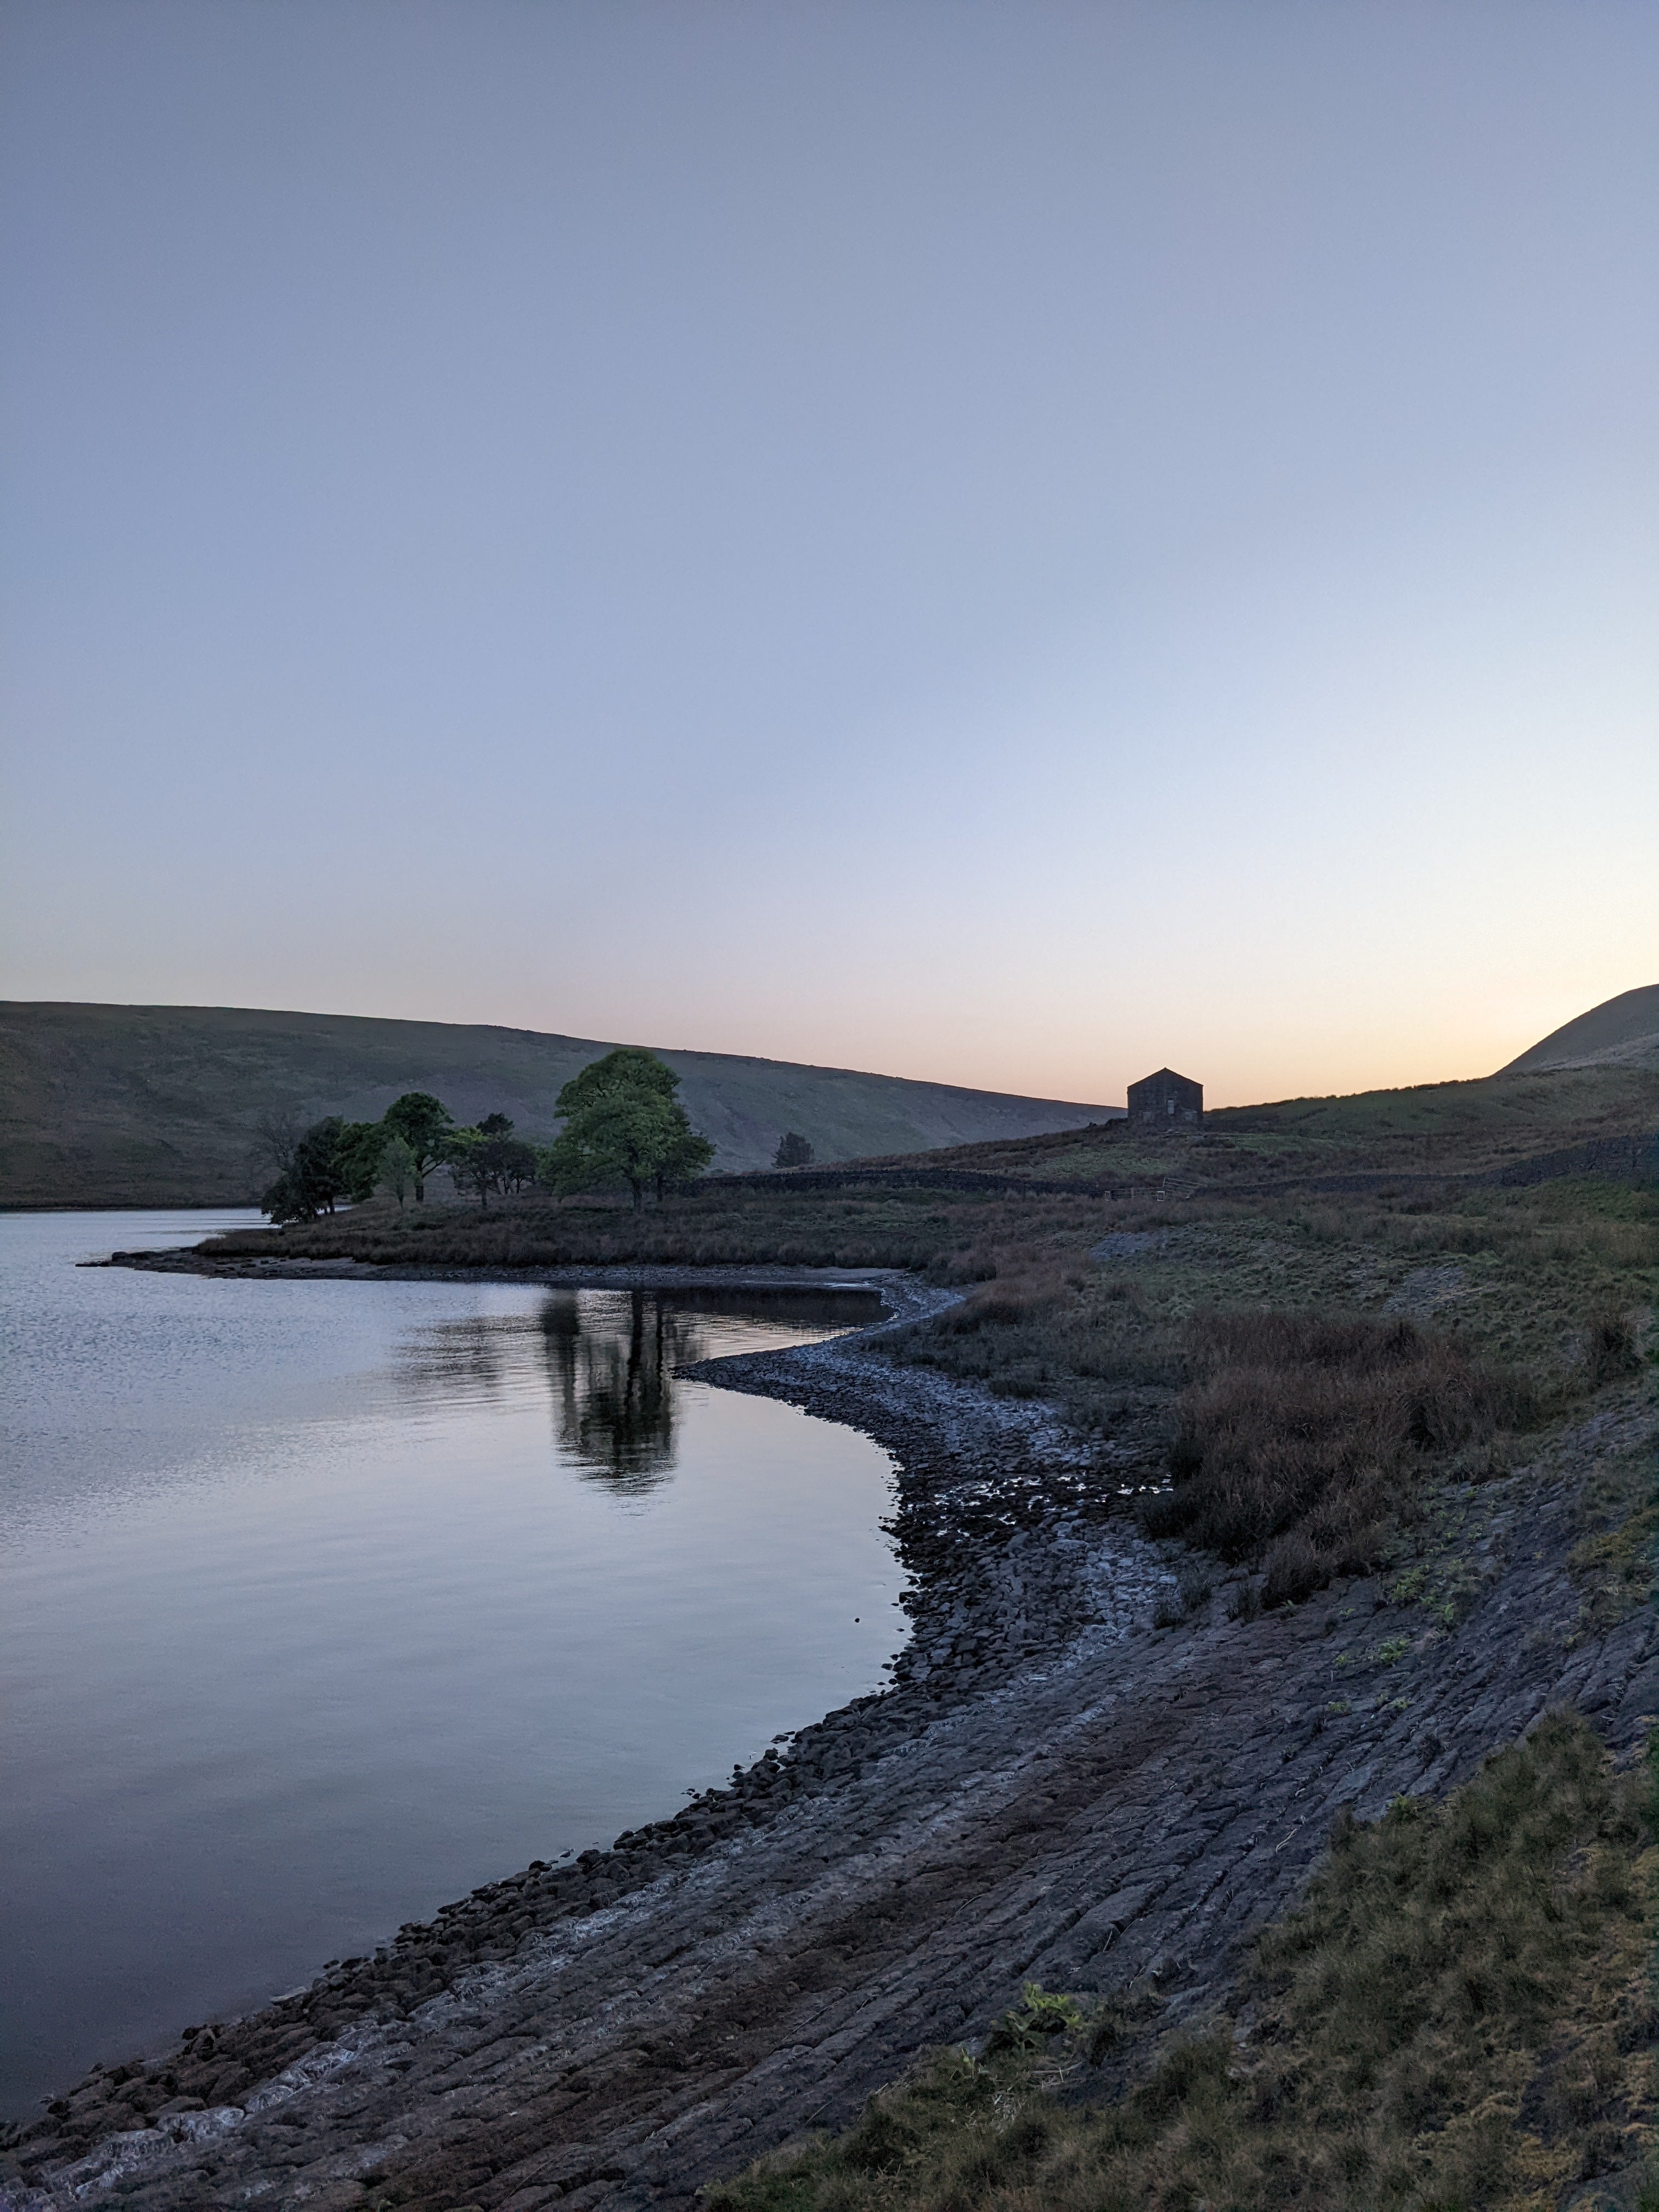 Widdop reservoir at sunset